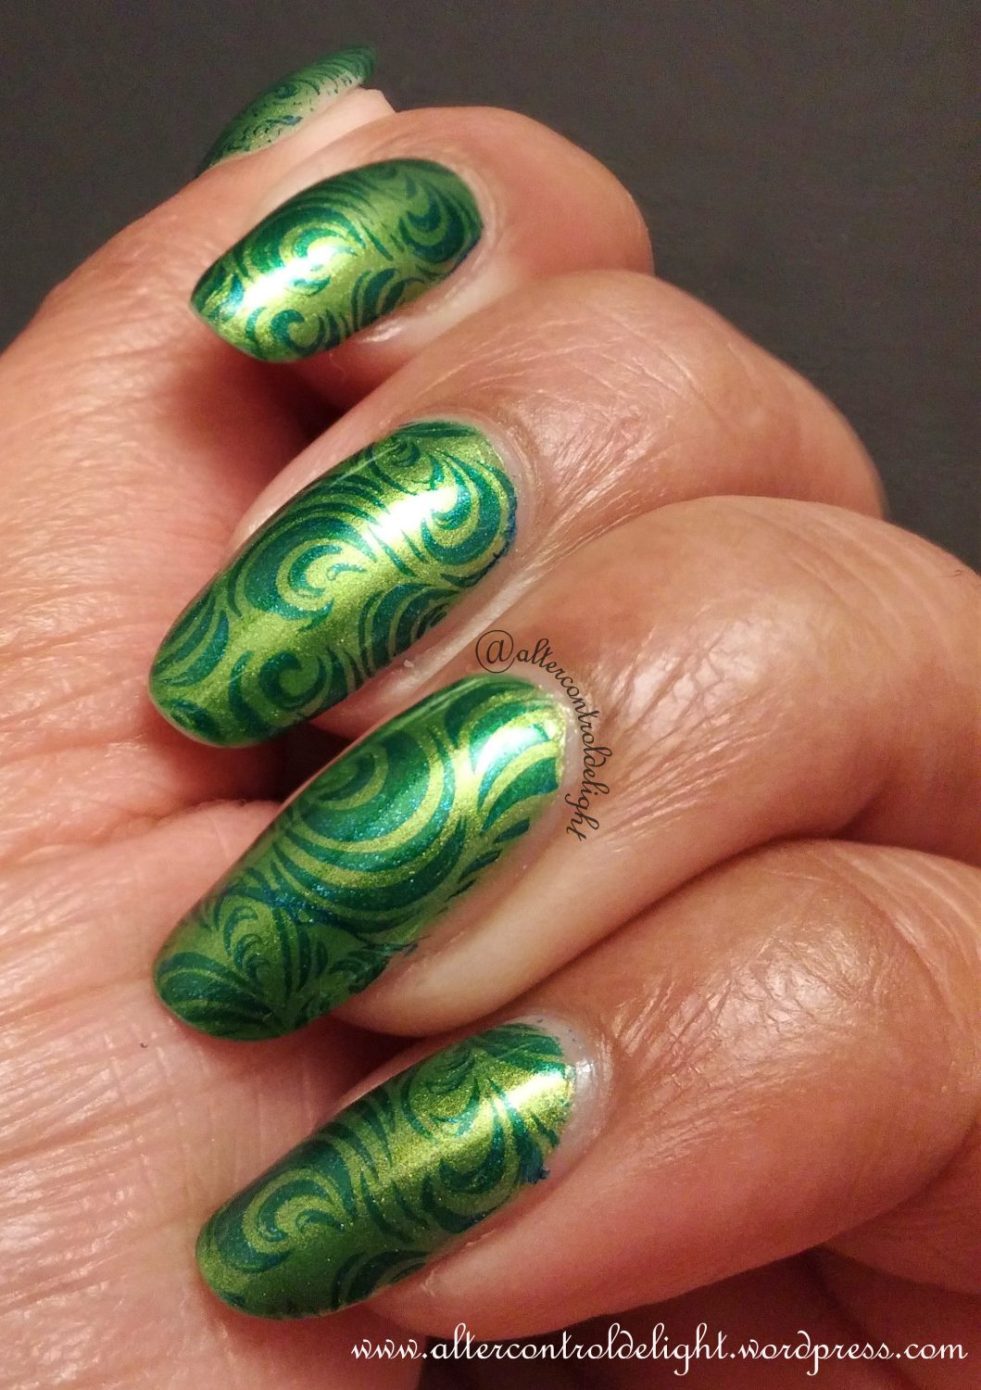 Blue & Green Swirls Nail Art